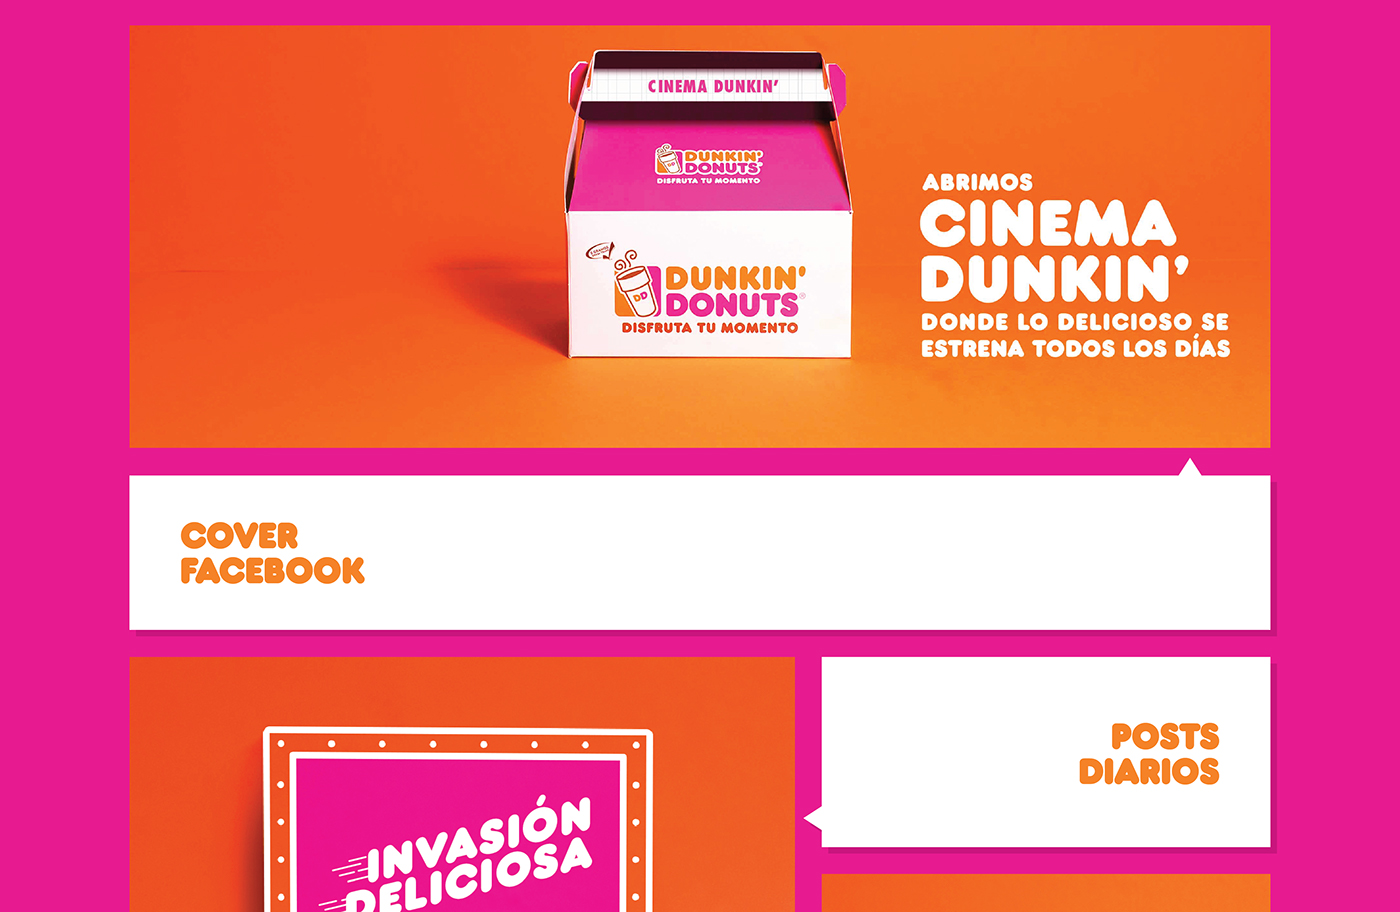 Dunkin Donuts dunkin Donuts